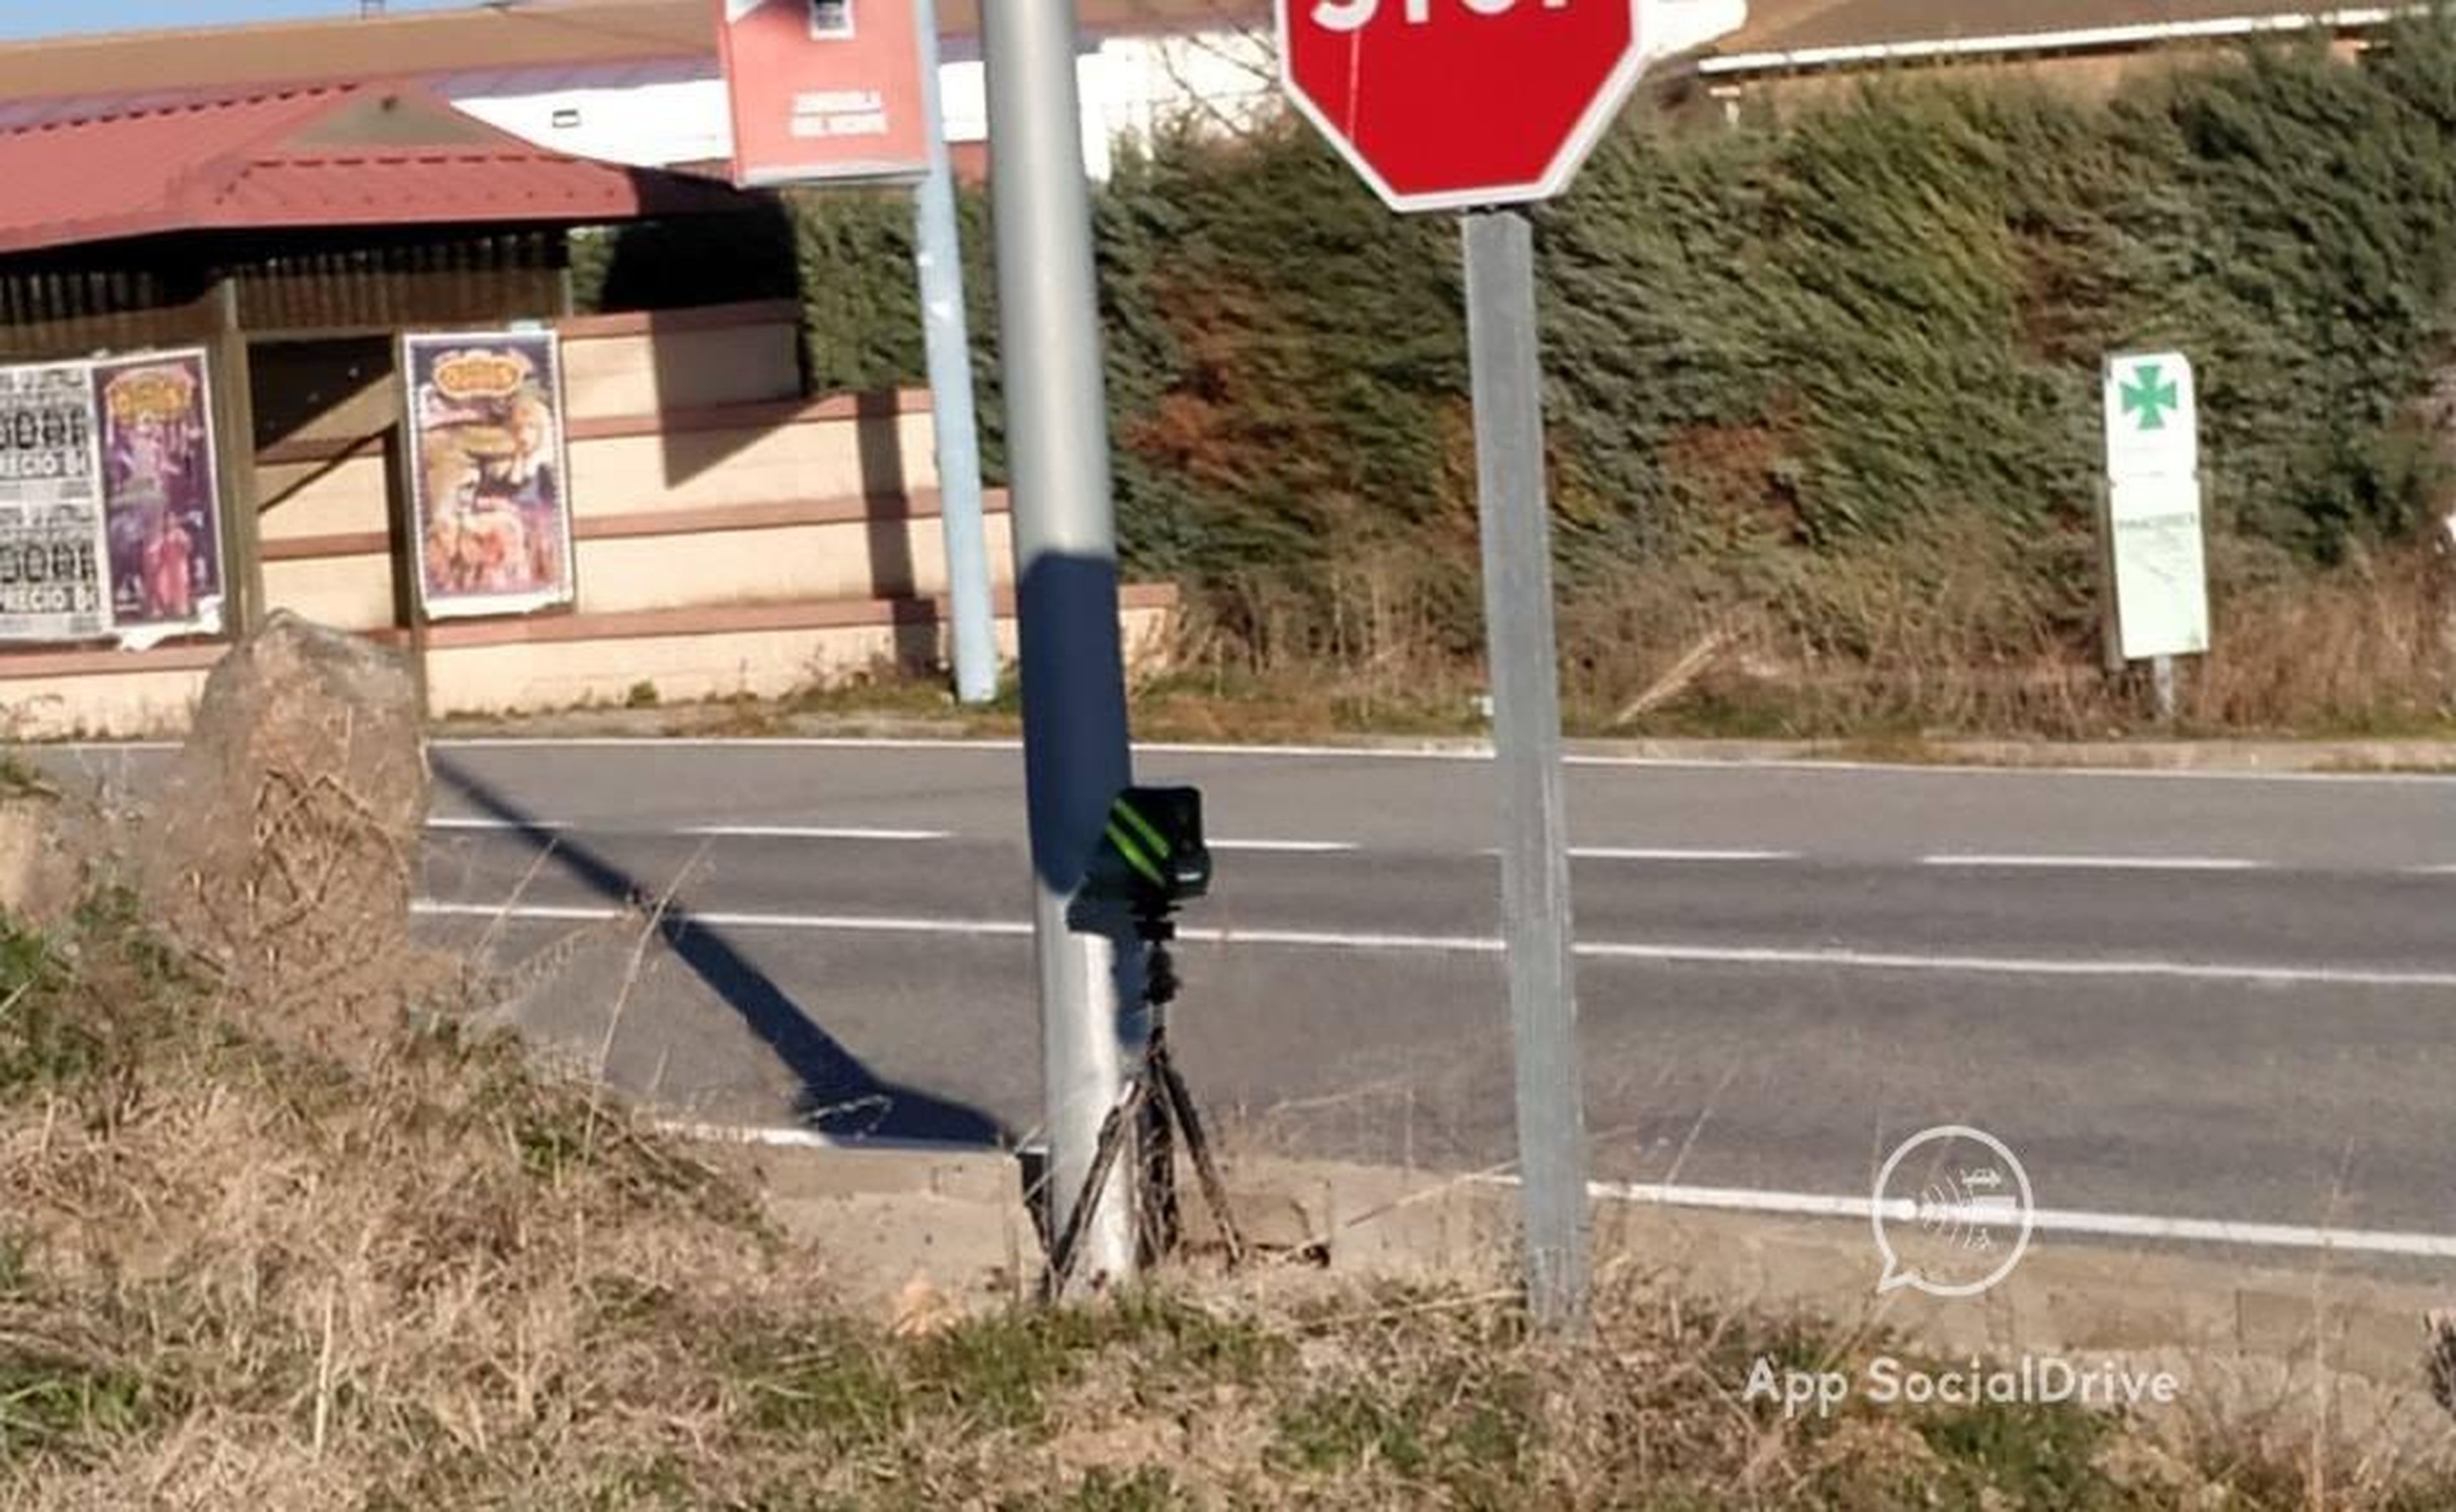 Radar Veloláser en Segovia